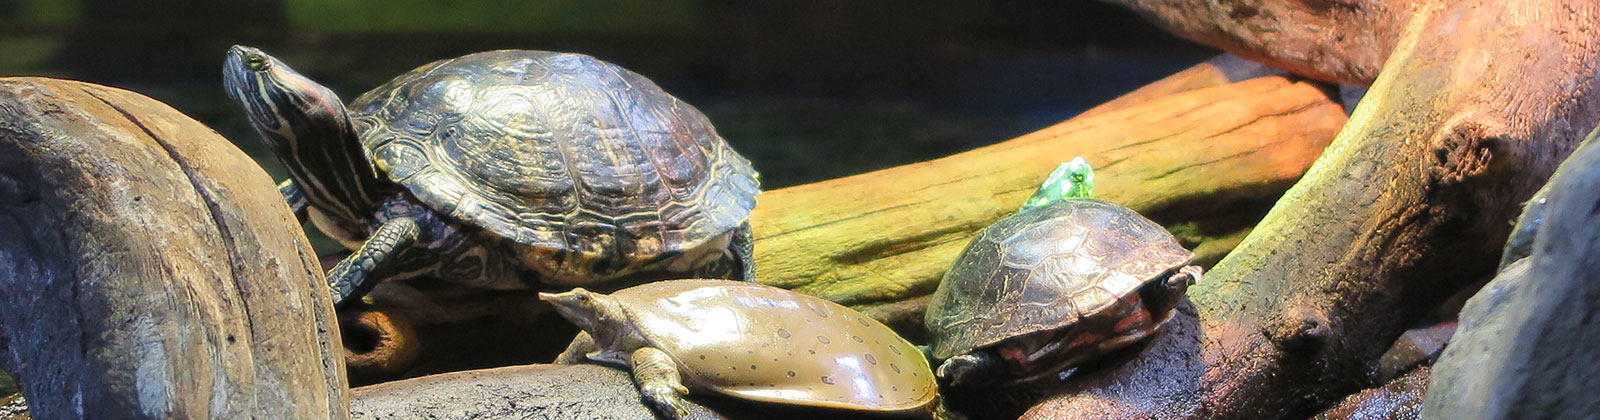 Turtles at Greater Cleveland Aquarium